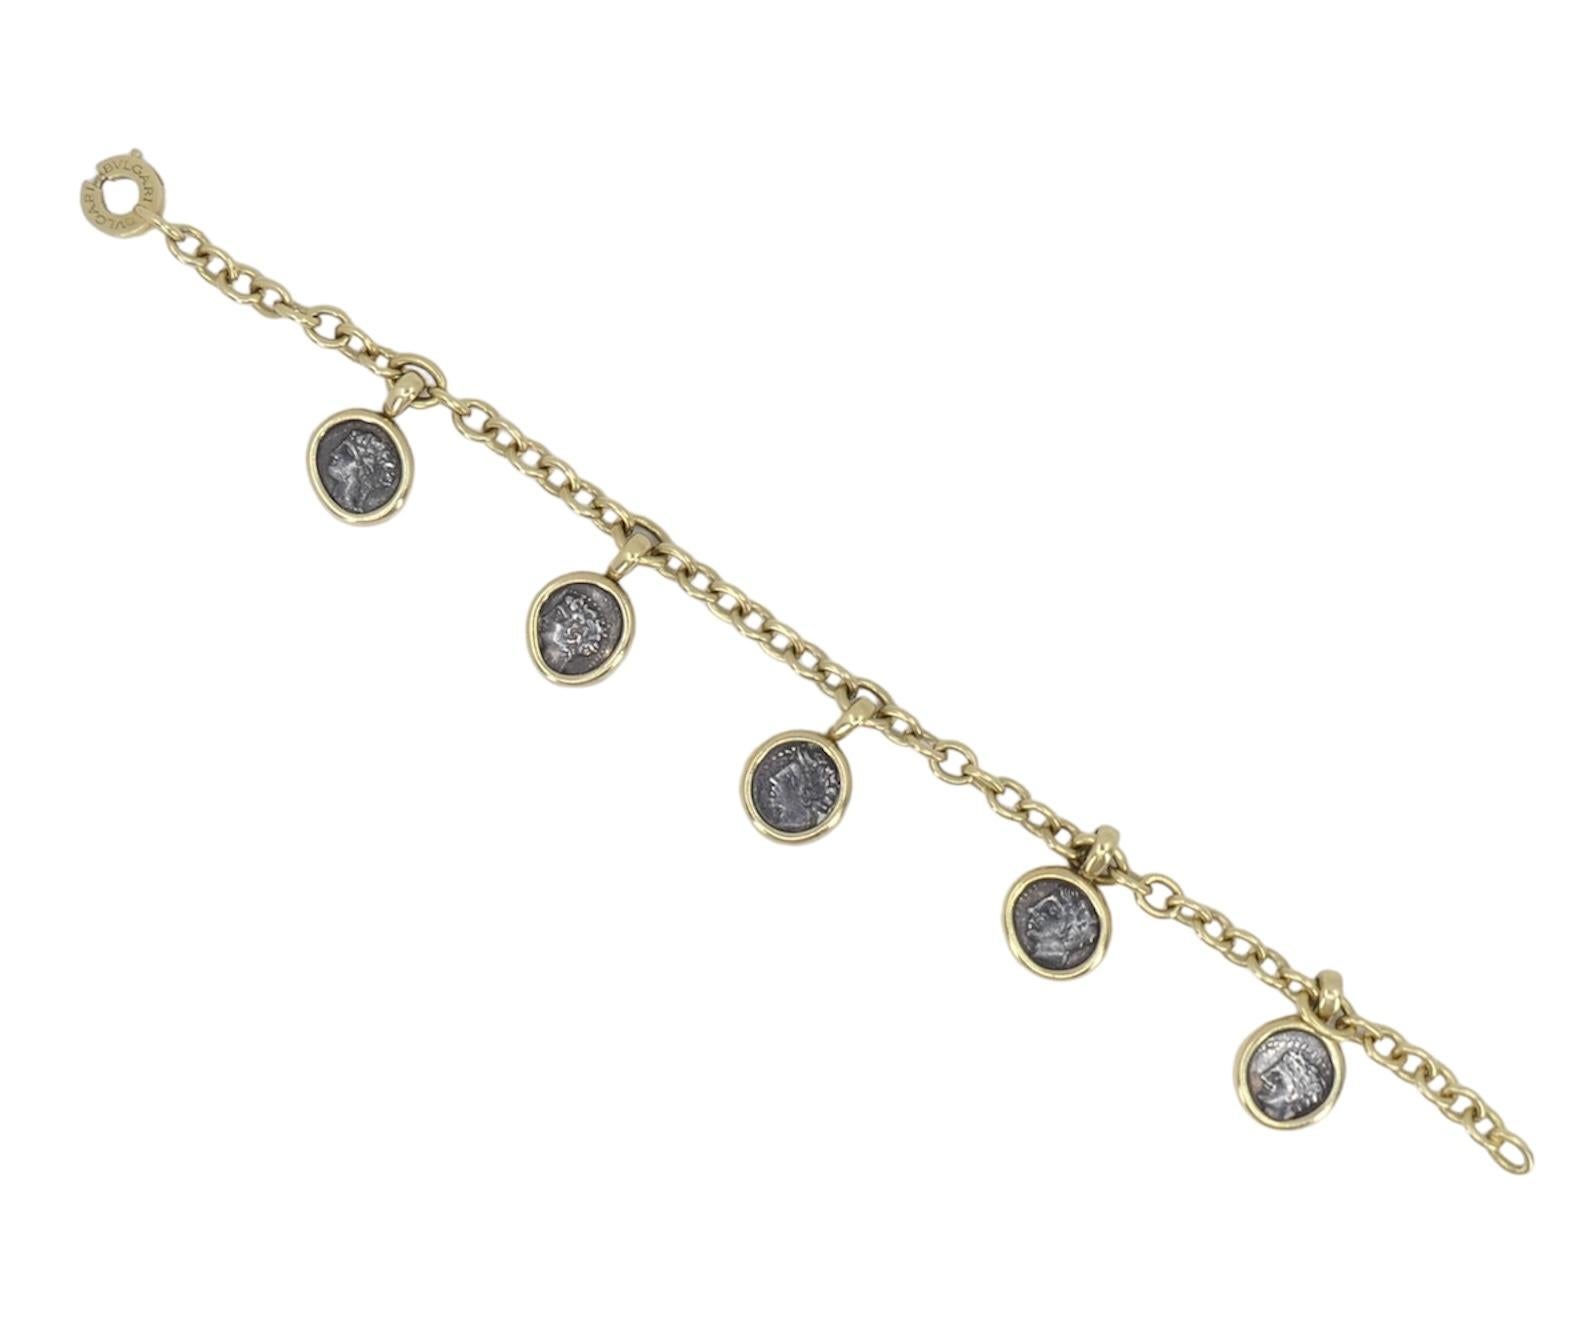 Dieses Bvlgari Monet Ancient Coin Charm Armband ist eine fesselnde Mischung aus Geschichte und Eleganz. Das aus 18 Karat Gelbgold gefertigte Armband ist mit fünf antiken Münzanhängern versehen, die anmutig am Armband baumeln und jeweils eine